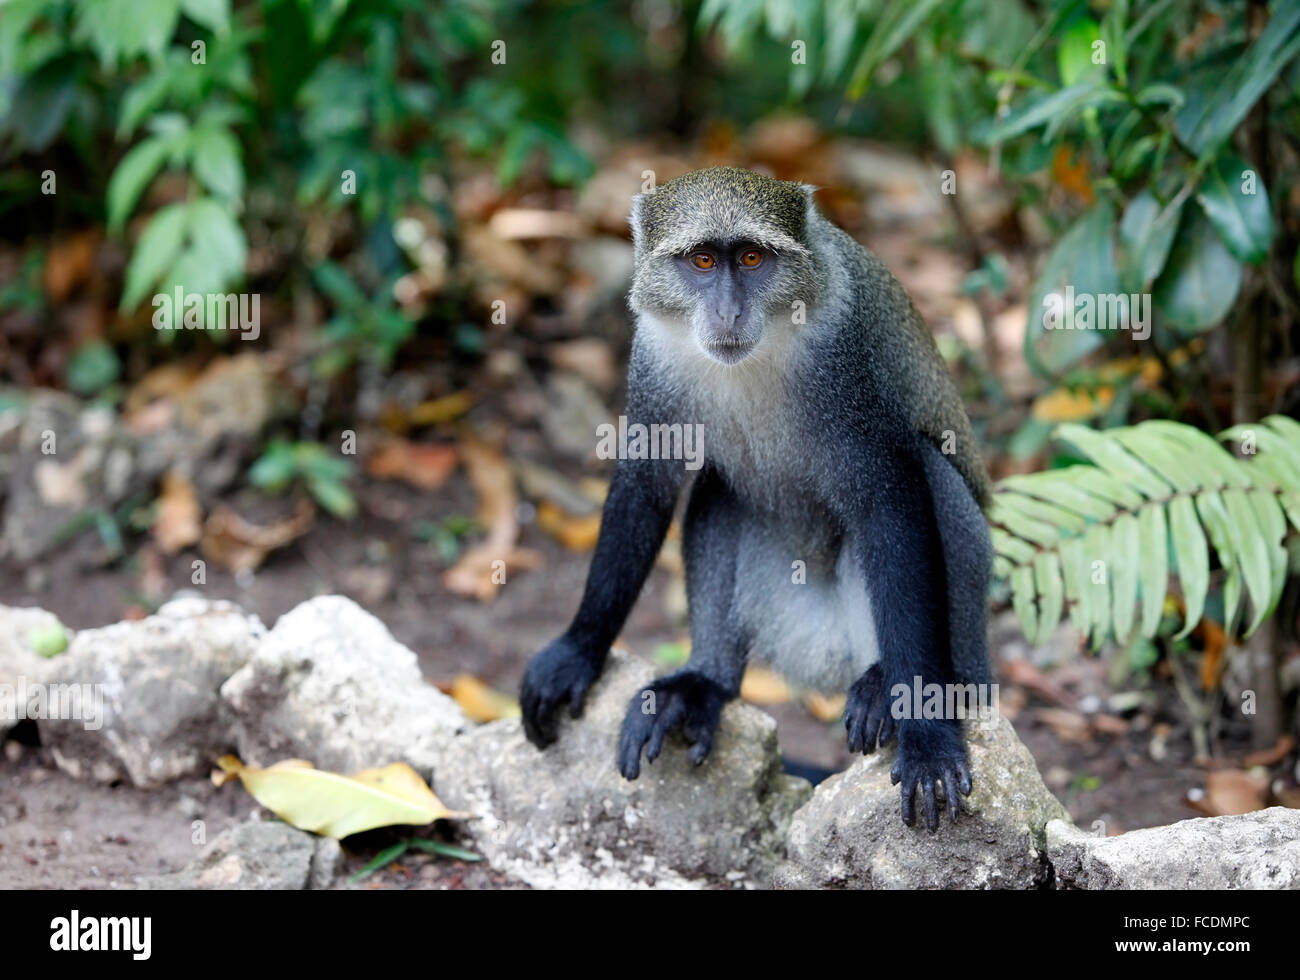 La faune sauvage monkey jungle face fond vert sur Zanzibar. Tanzanie Banque D'Images